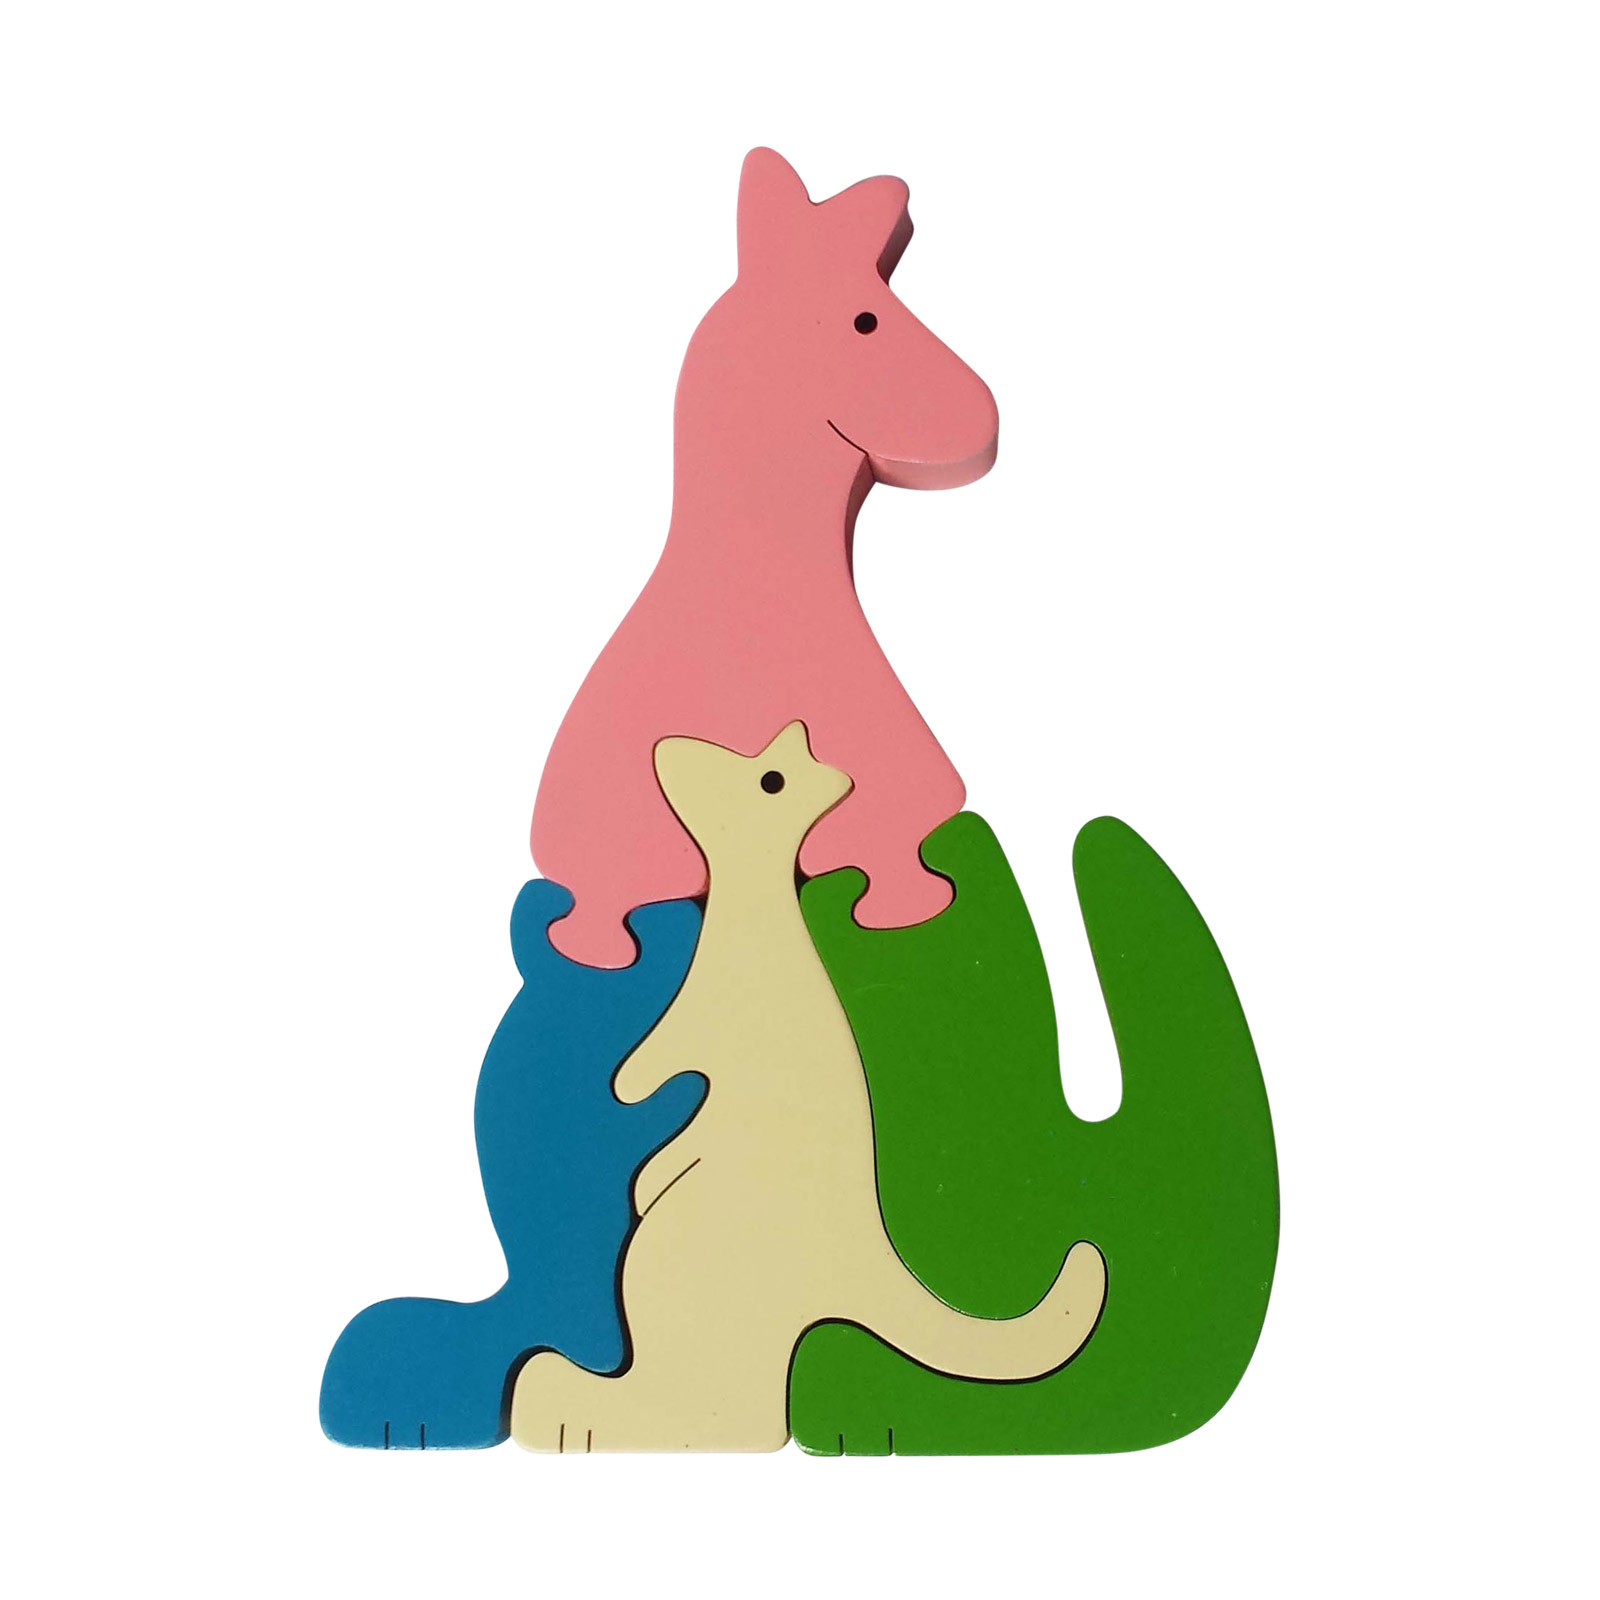 Kangaroo wooden animal puzzle - Jigzoos Australia | JIGZOOS
